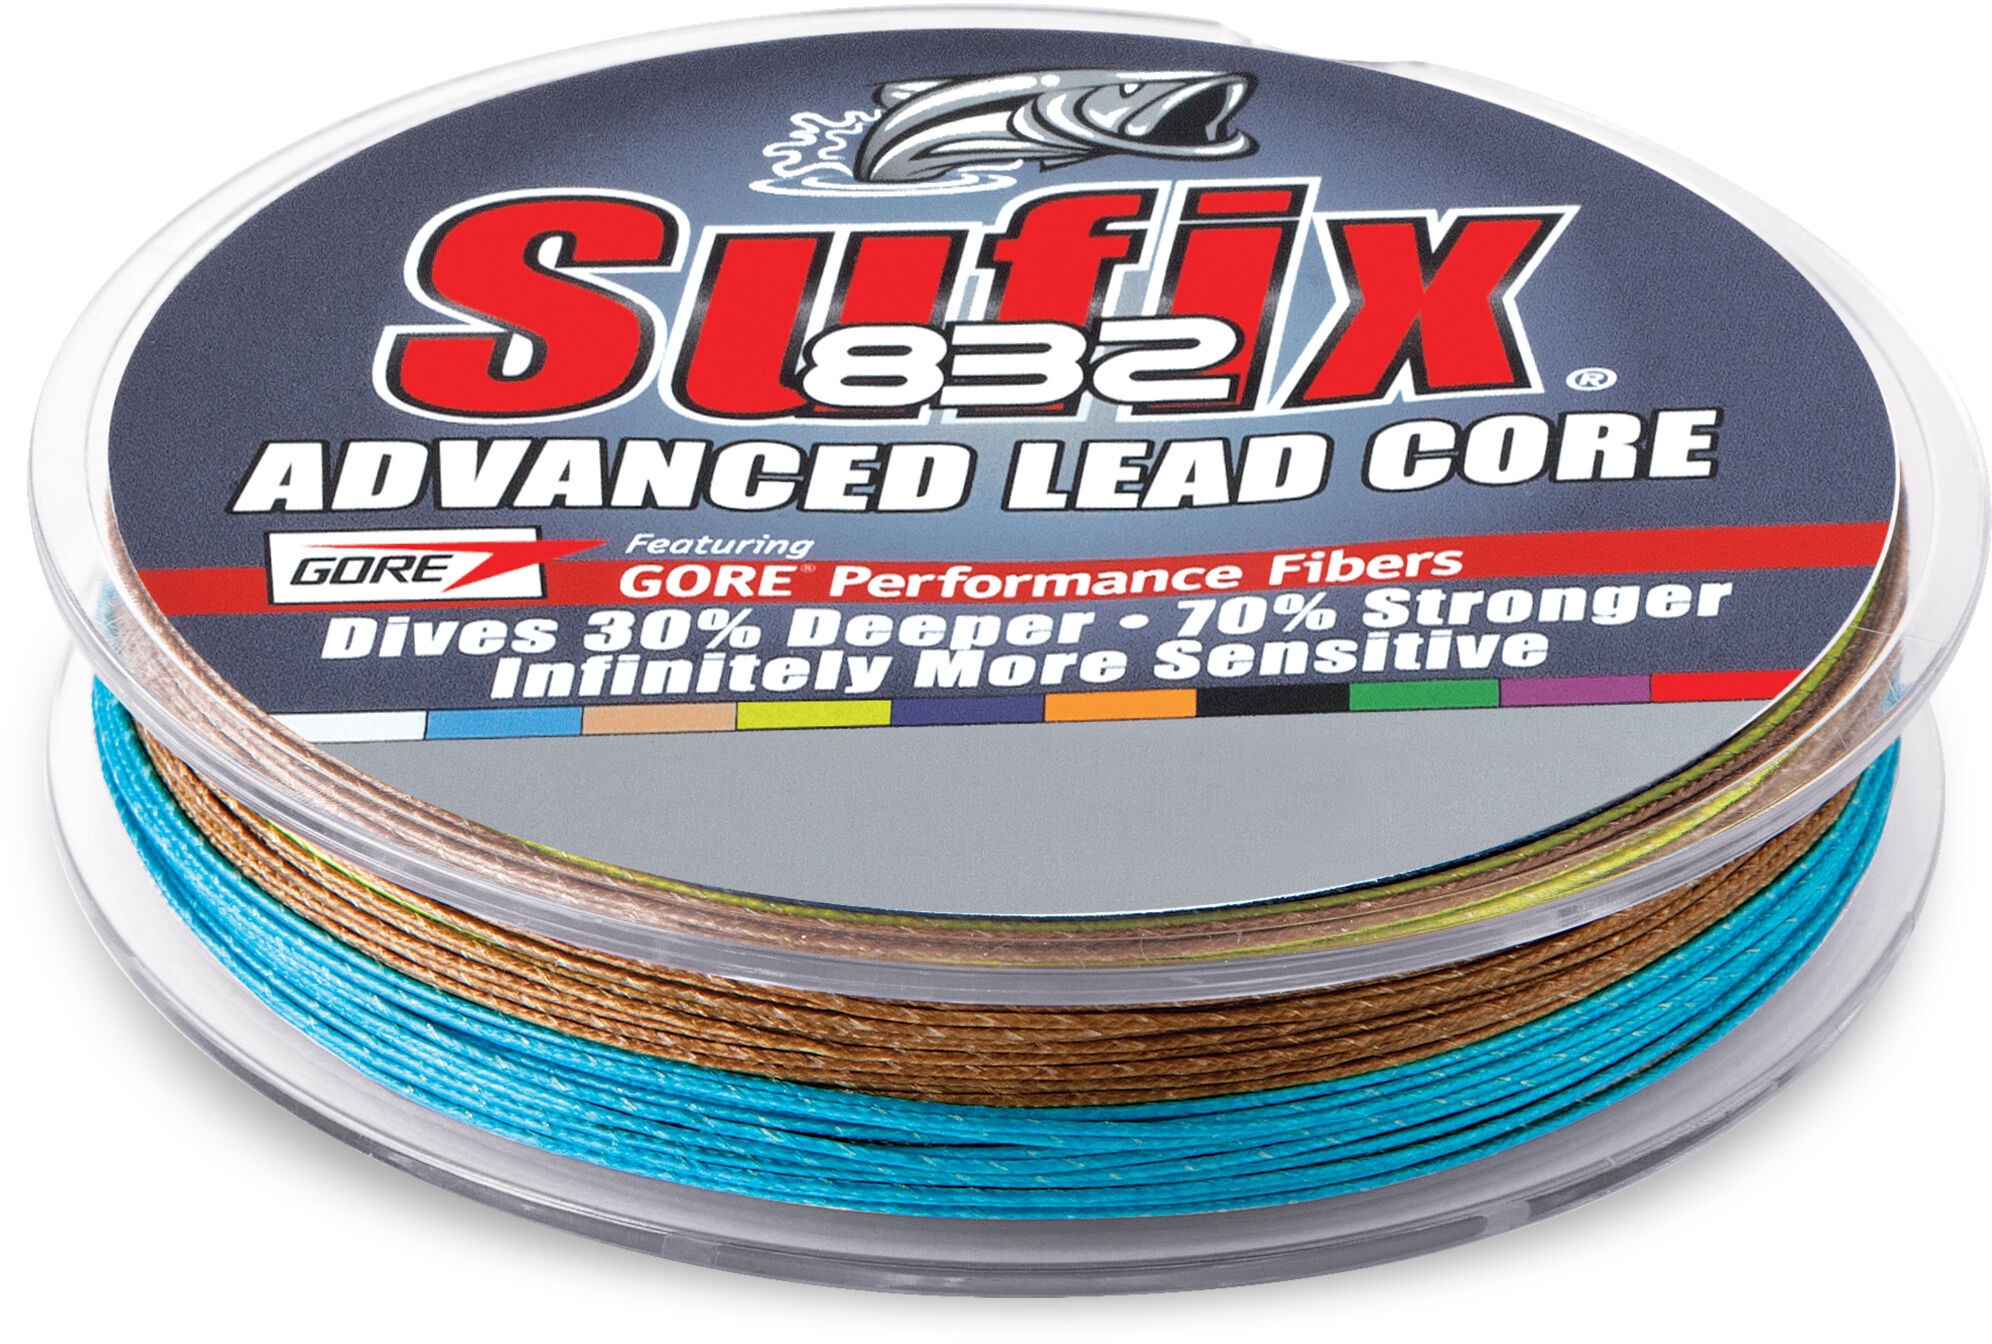 Sufix 832 Lead Core 18lb Line